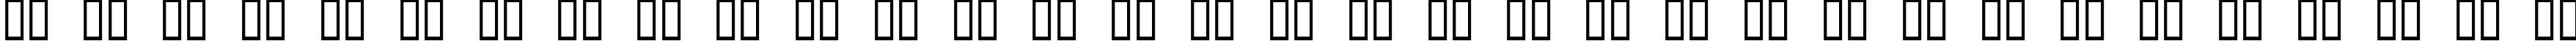 Пример написания русского алфавита шрифтом Occoluchi Spread